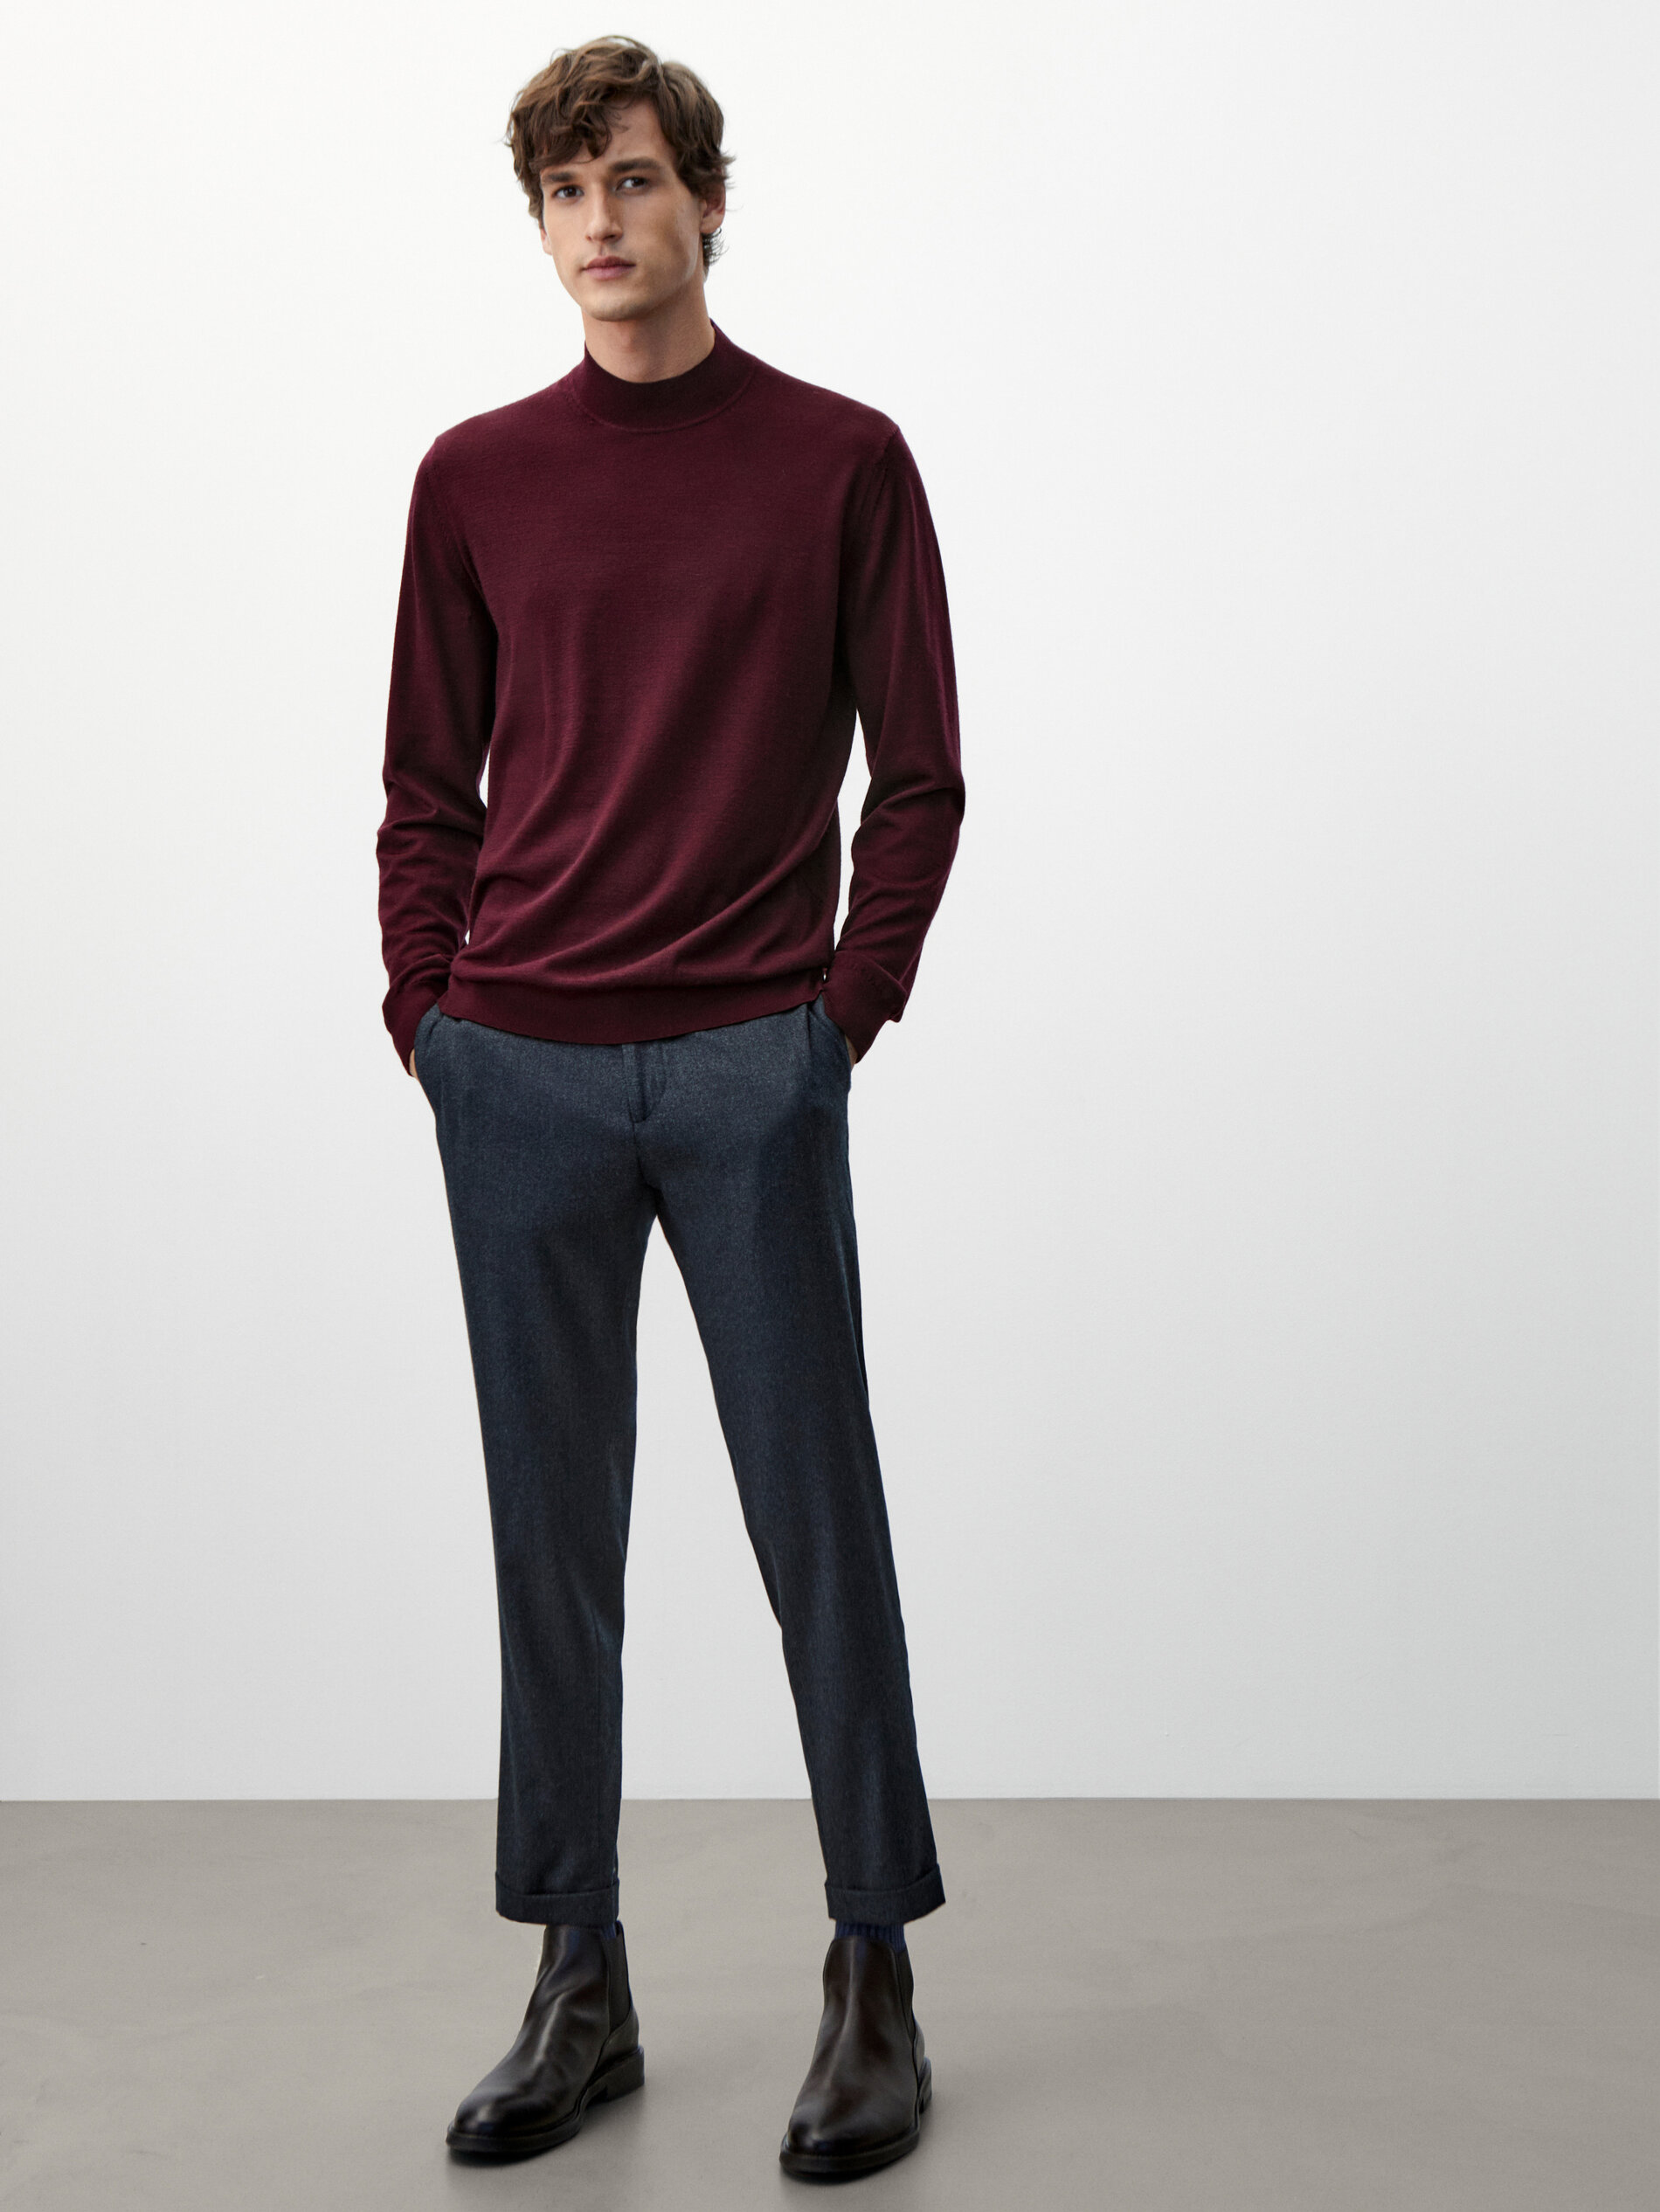 Massimo Dutti - Mock turtleneck sweater in 100% wool